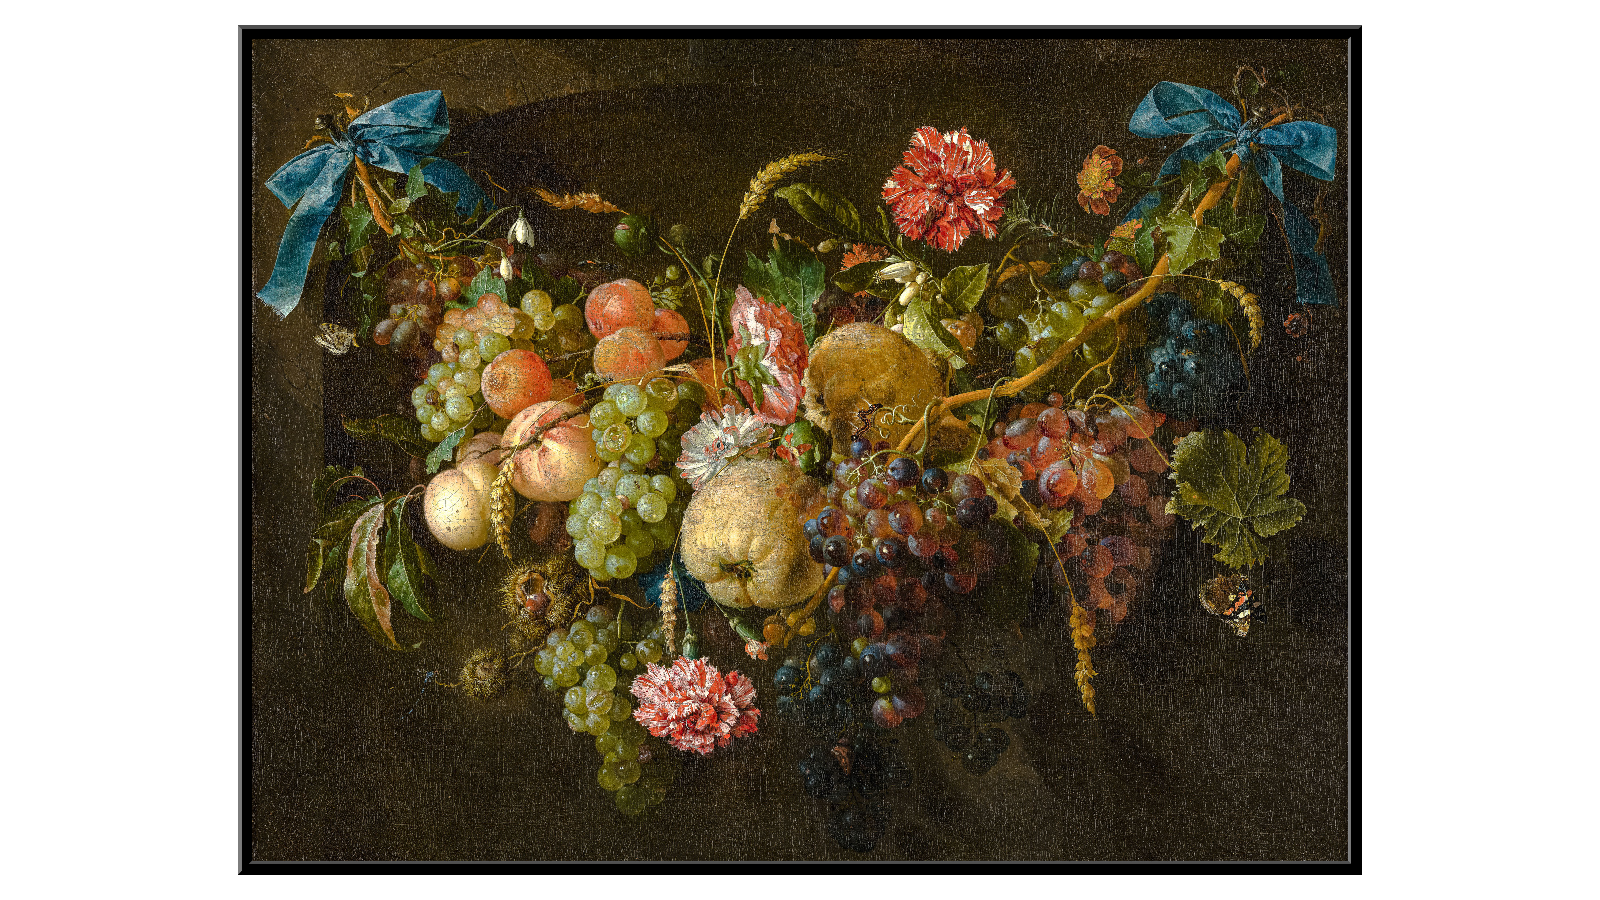 Bukiet z owocami i kwiatami - Jan Davidszoon de Heem